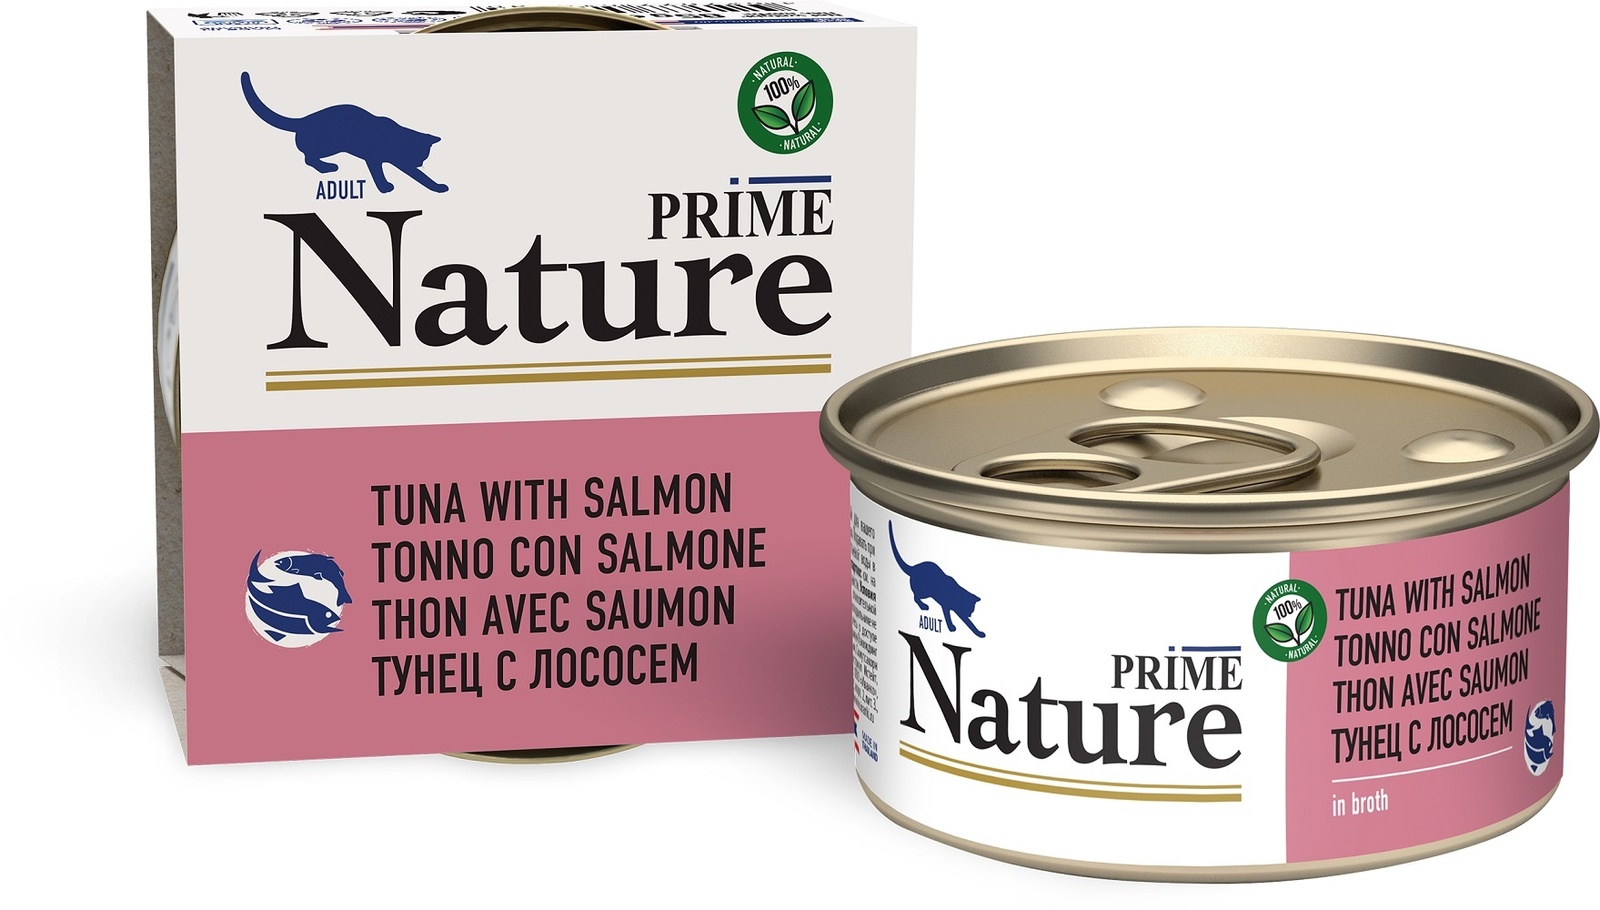 Prime Nature консервы для кошек: тунец с лососем в бульоне (85 г) Prime Nature консервы для кошек: тунец с лососем в бульоне (85 г) - фото 1